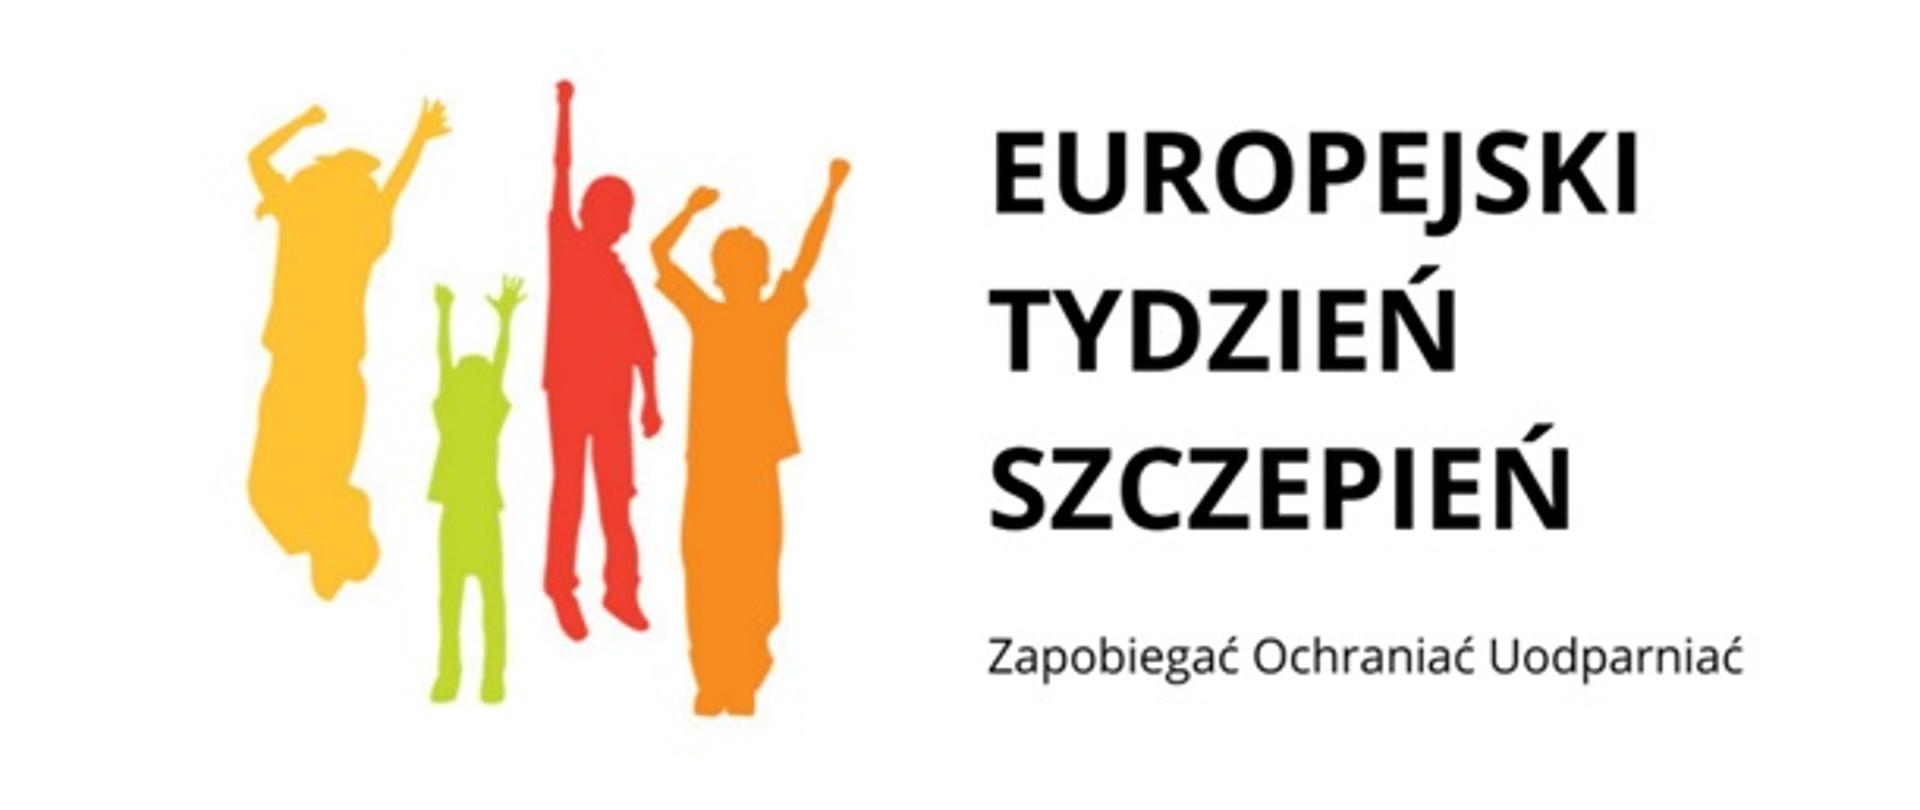 Z lewej strony kolorowe skaczące dzieci, z prawej napis"EUROPEJSKI TYDZIEŃ SZCZEPIEŃ Zapobiegać Ochraniać Uodparniać"